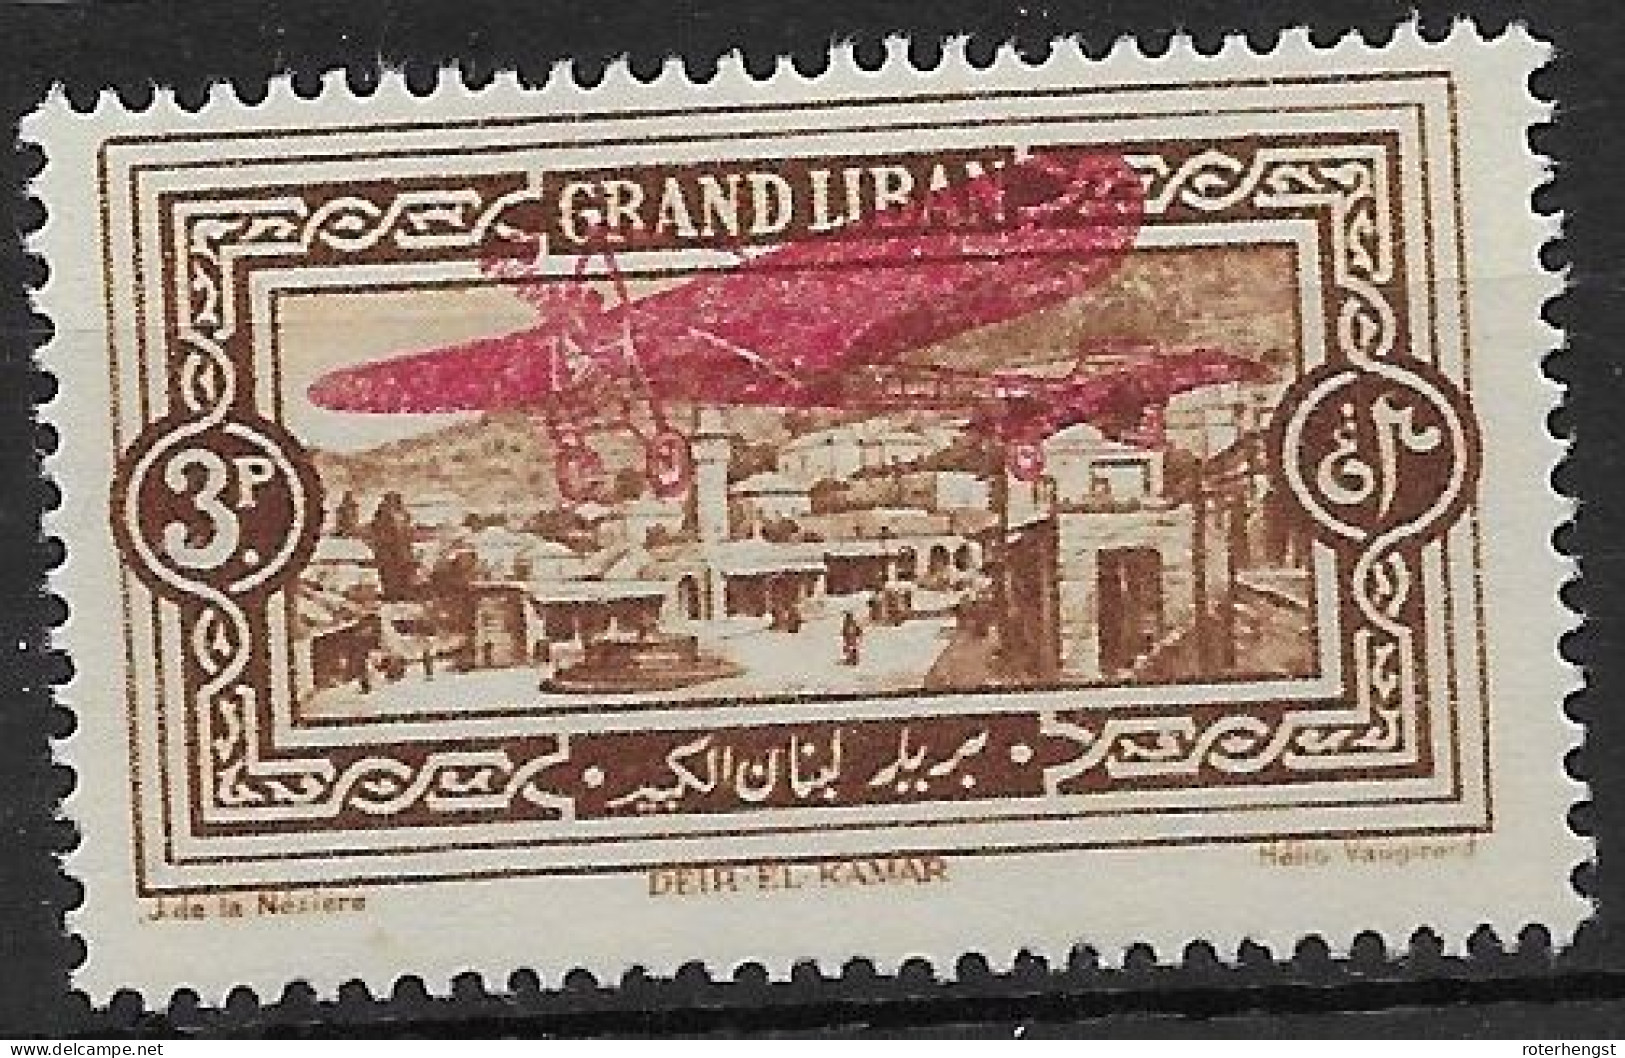 Grand Liban 1926 Airmail Mh* 5 Euros - Posta Aerea